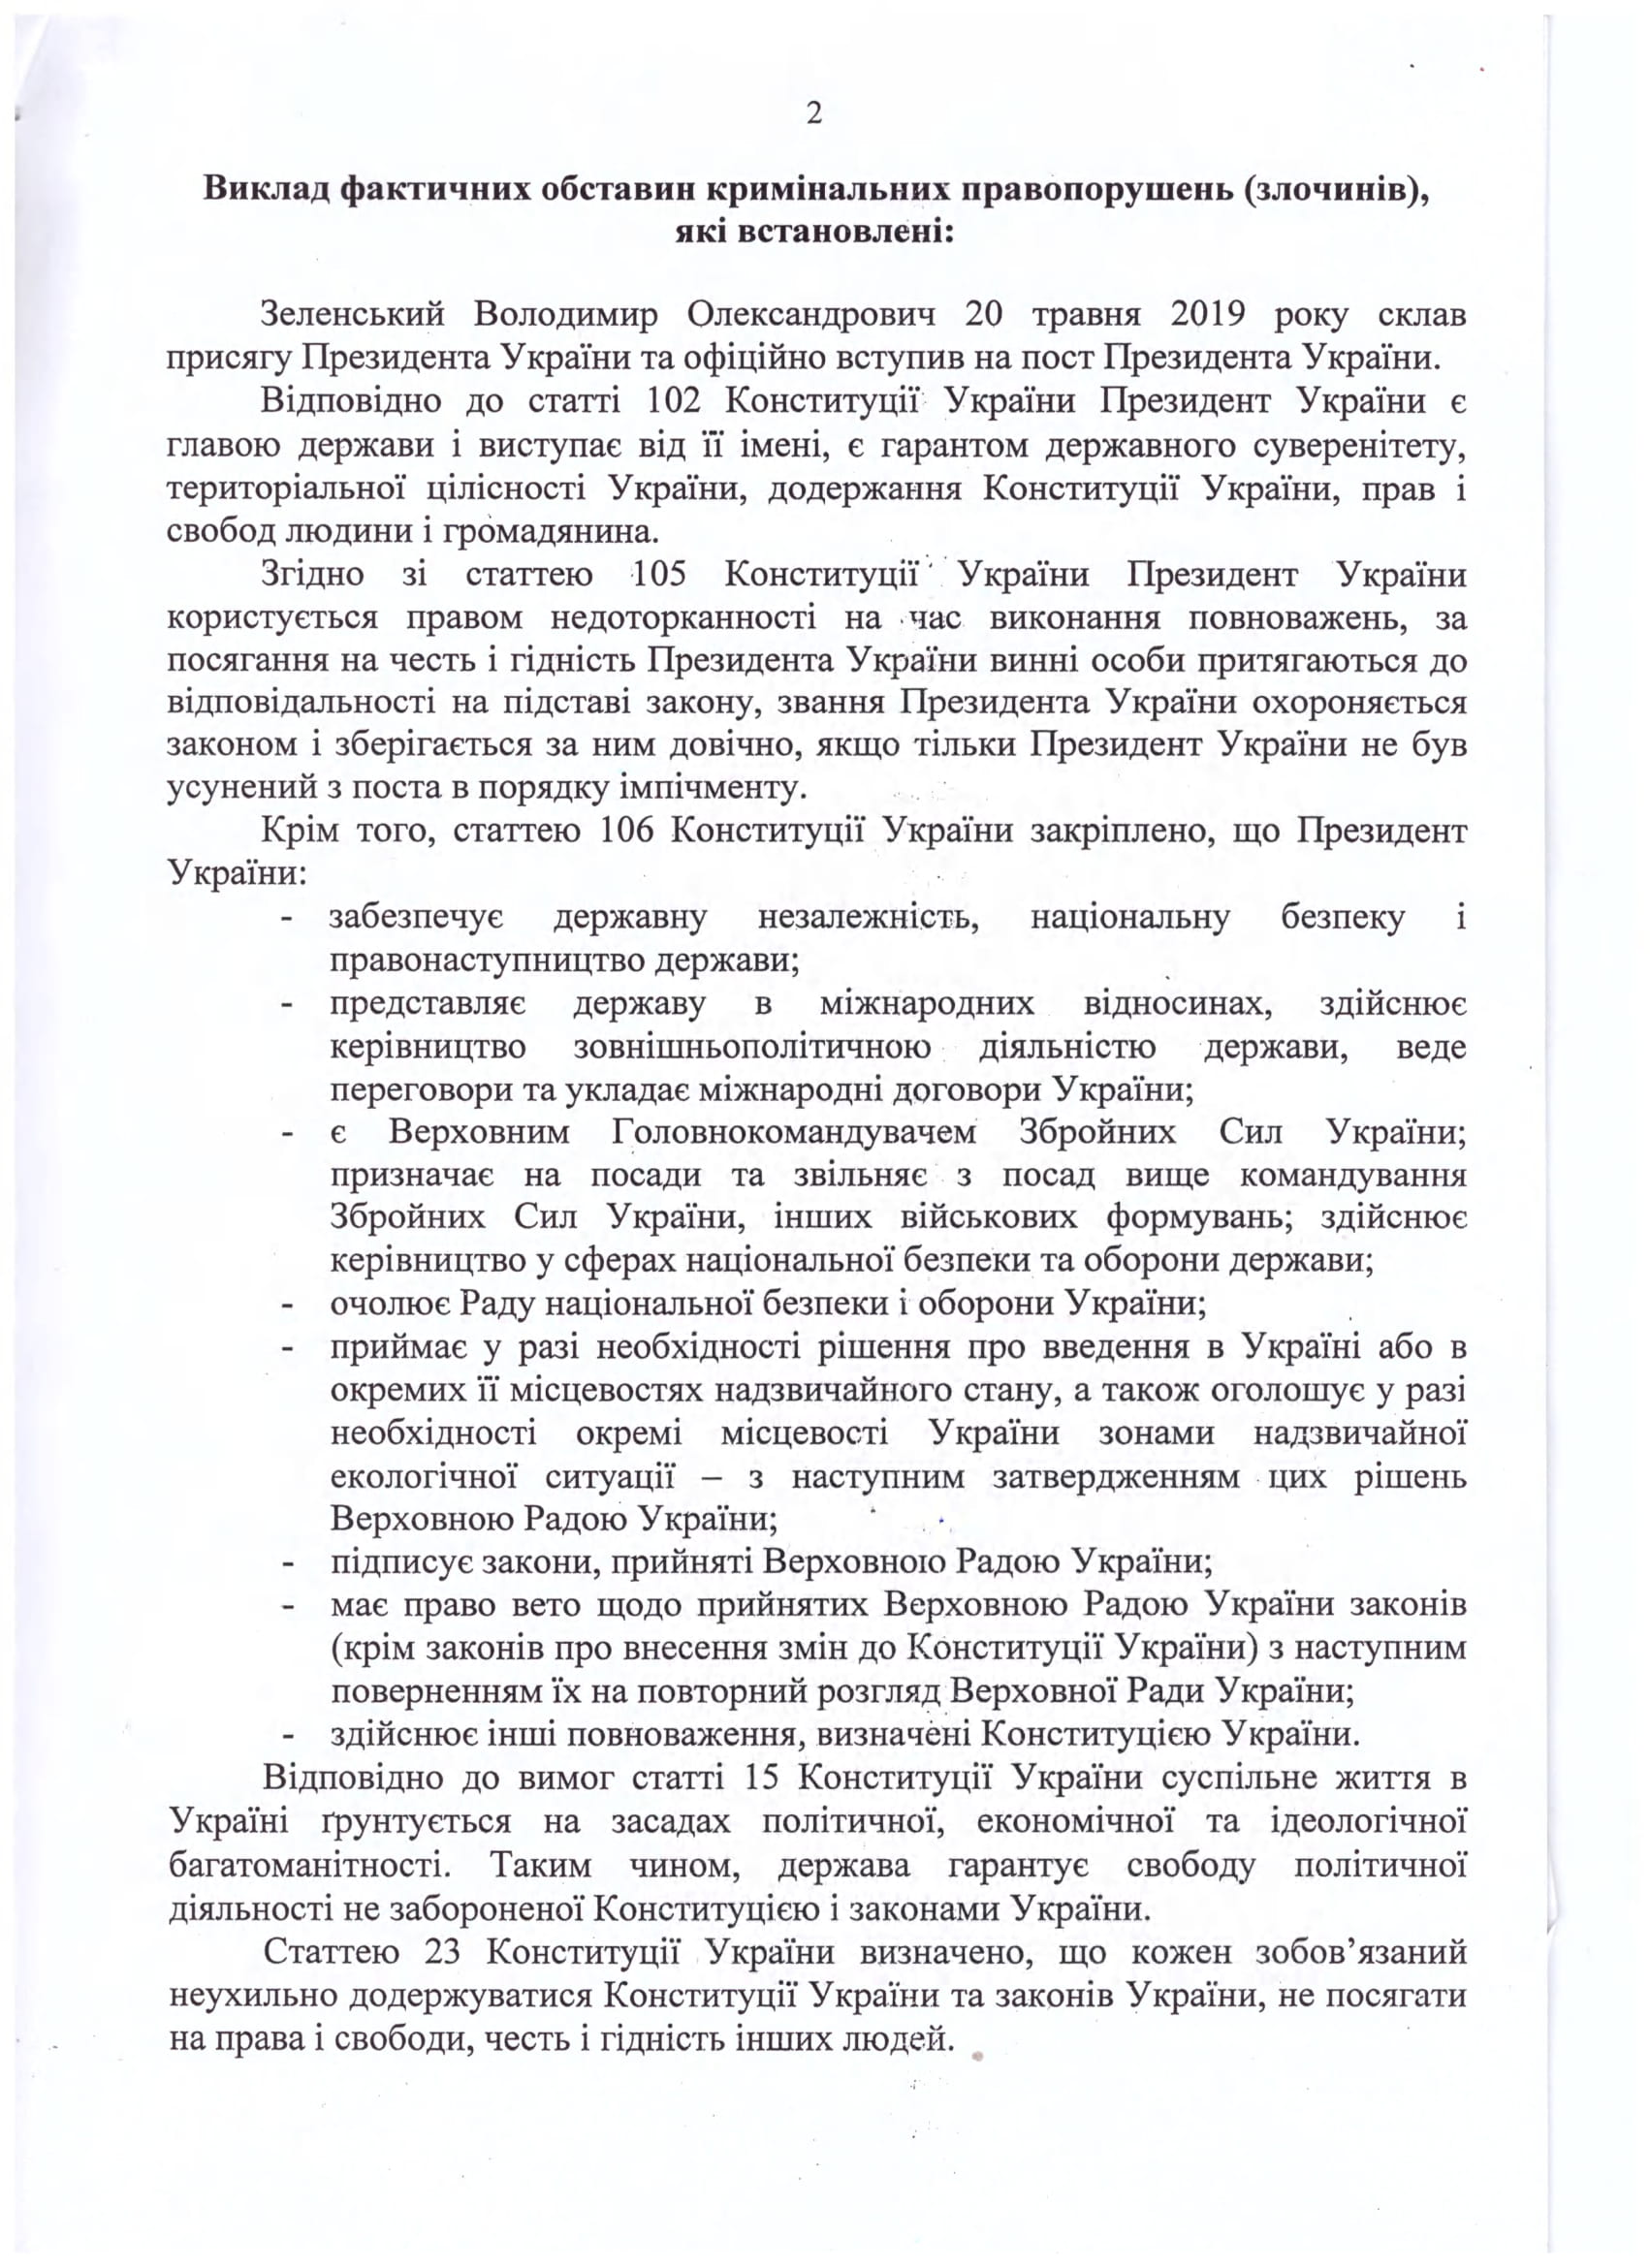 СМИ опубликовали обвинительный акт Пояркову за угрозы Зеленскому - 2 - изображение